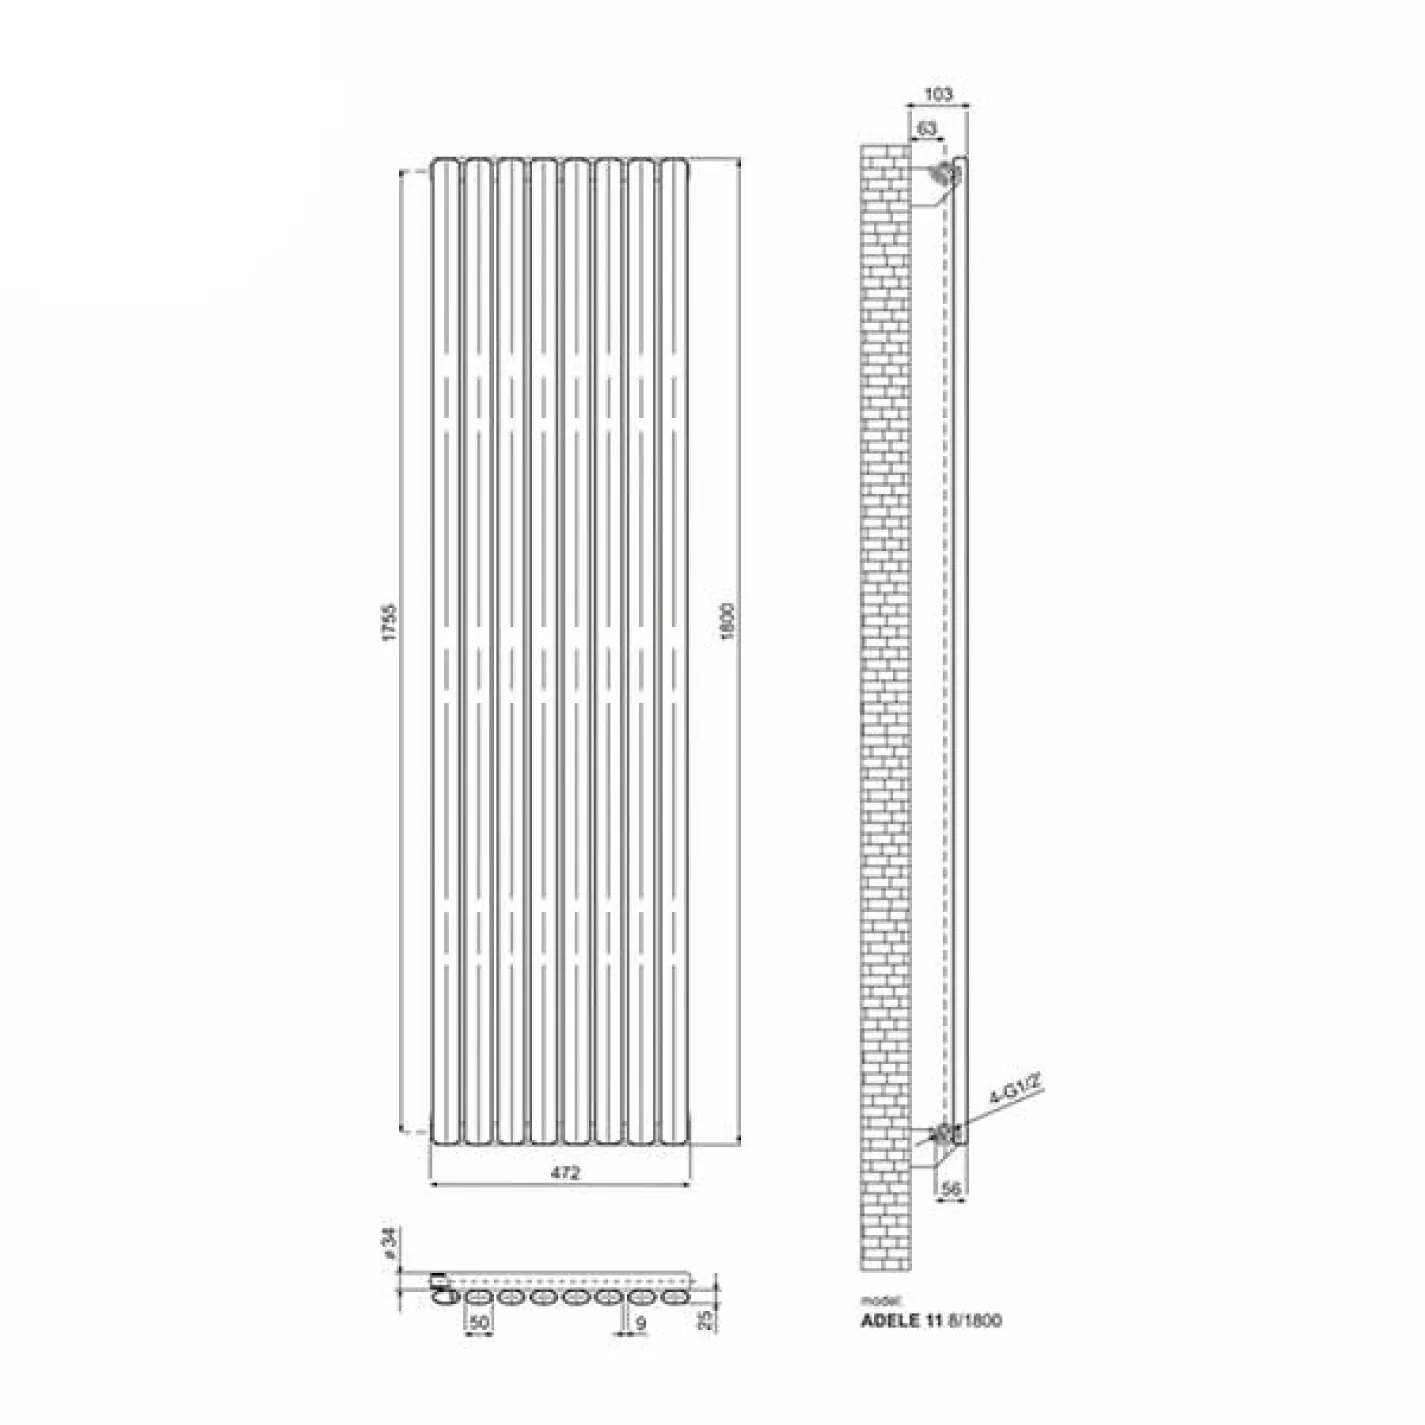 Трубчастый радиатор Ideale Adele 1 колонна 8 секций 1800x472 антрацит - Фото 3